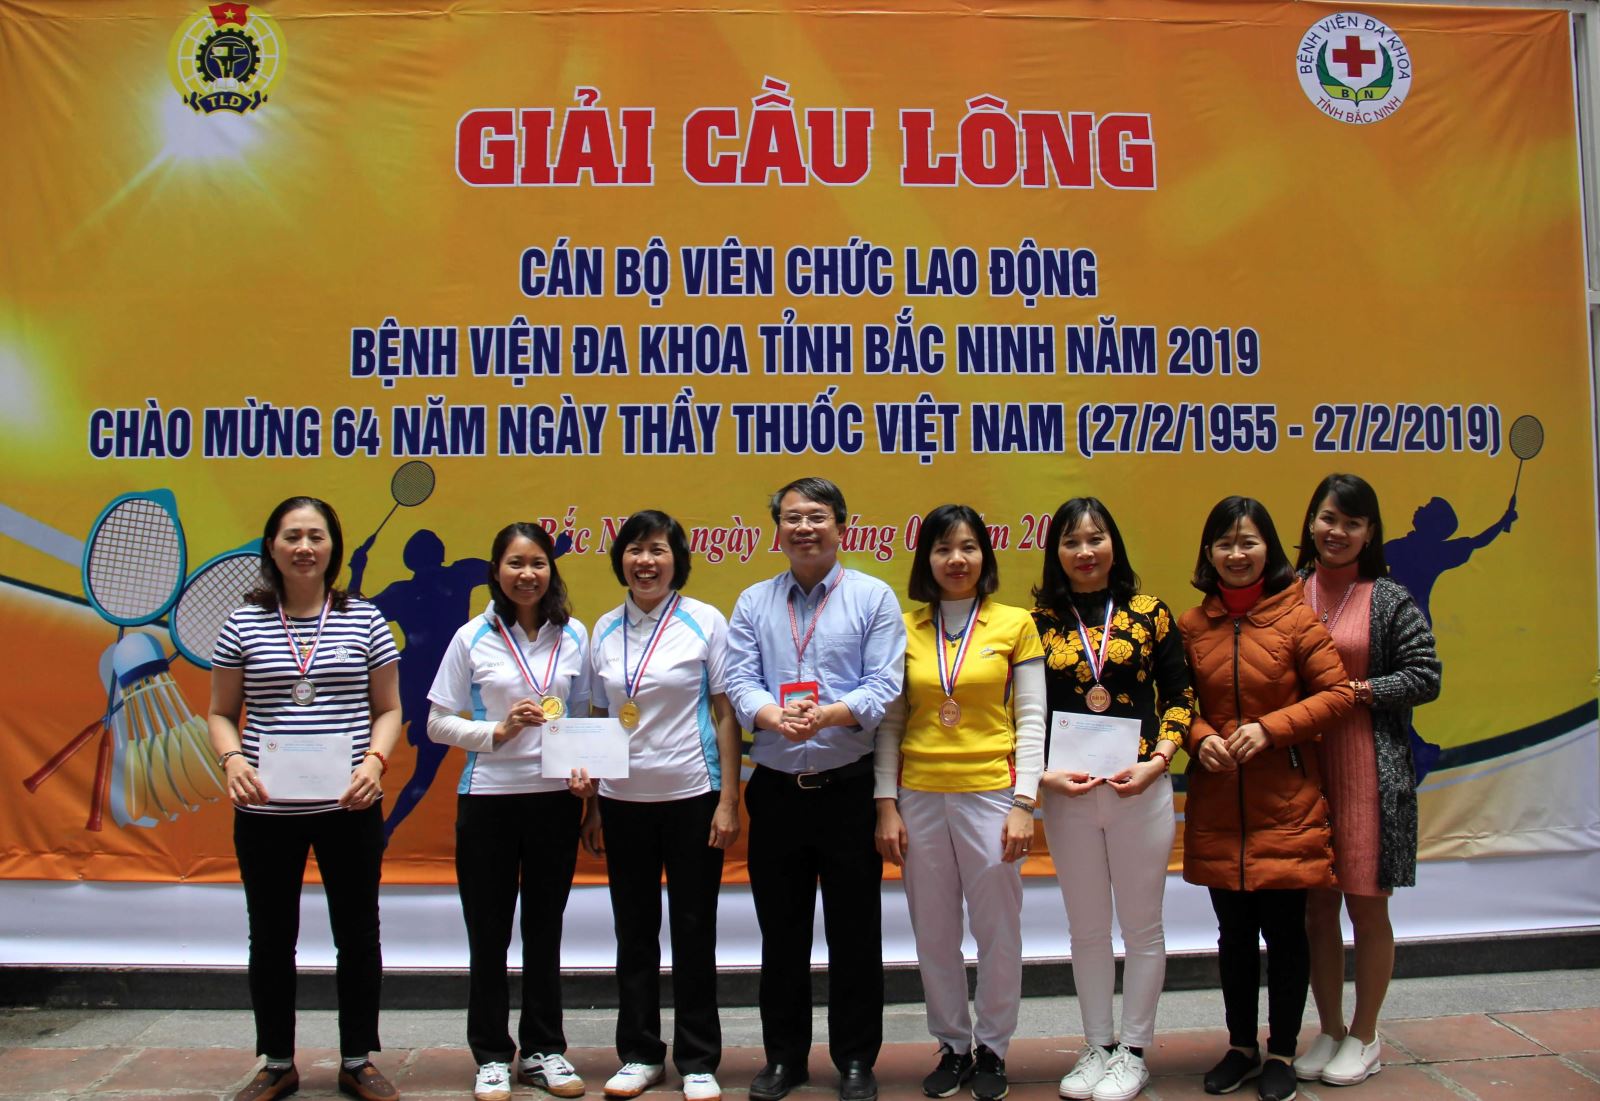 Bệnh viện đa khoa tỉnh Bắc Ninh tổ chức giải cầu lông chào mừng ngày Thầy thuốc Việt Nam 27/02/2019